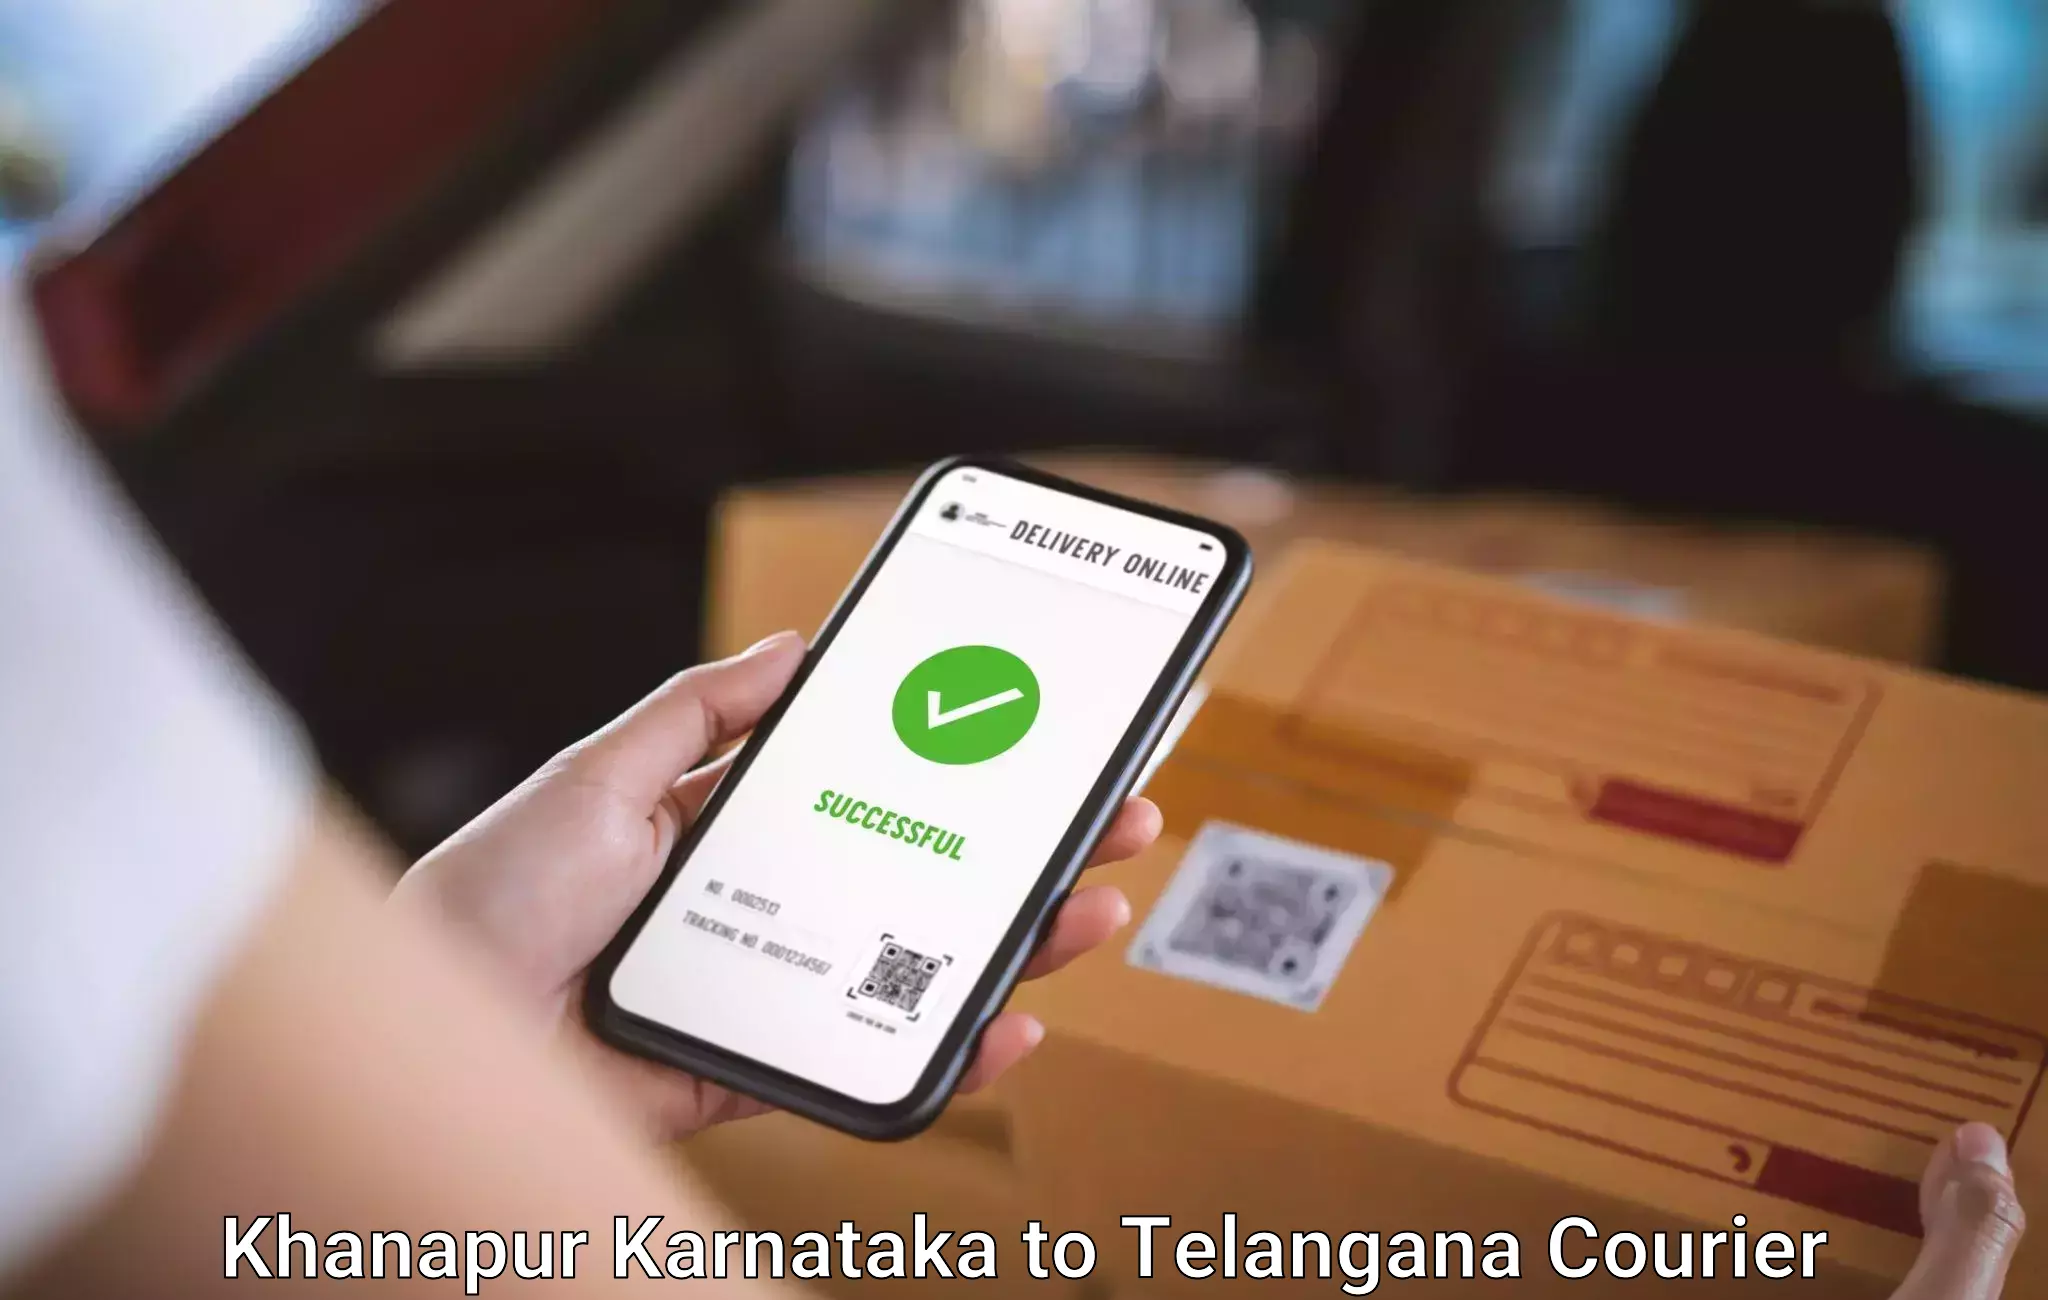 Luggage shipment tracking Khanapur Karnataka to Kusumanchi